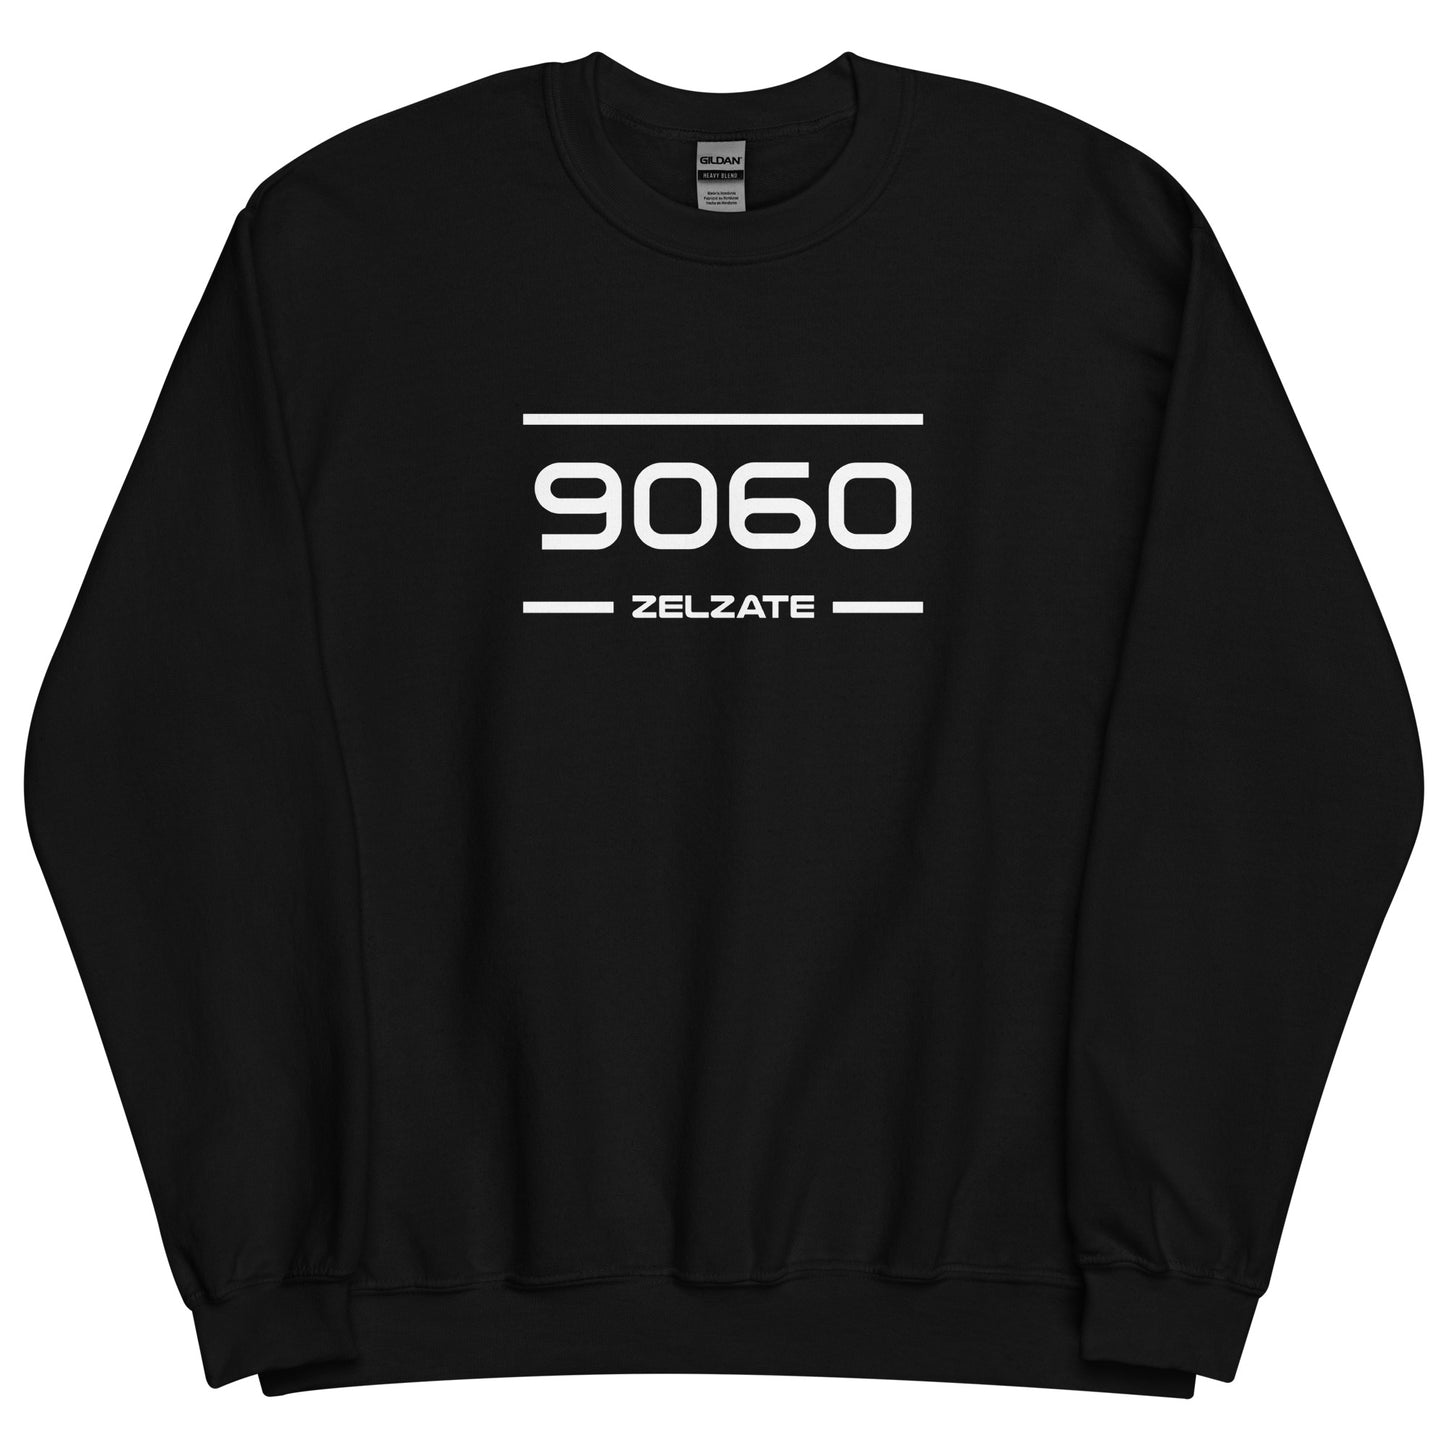 Sweater - 9060 - Zelzate (M/V)